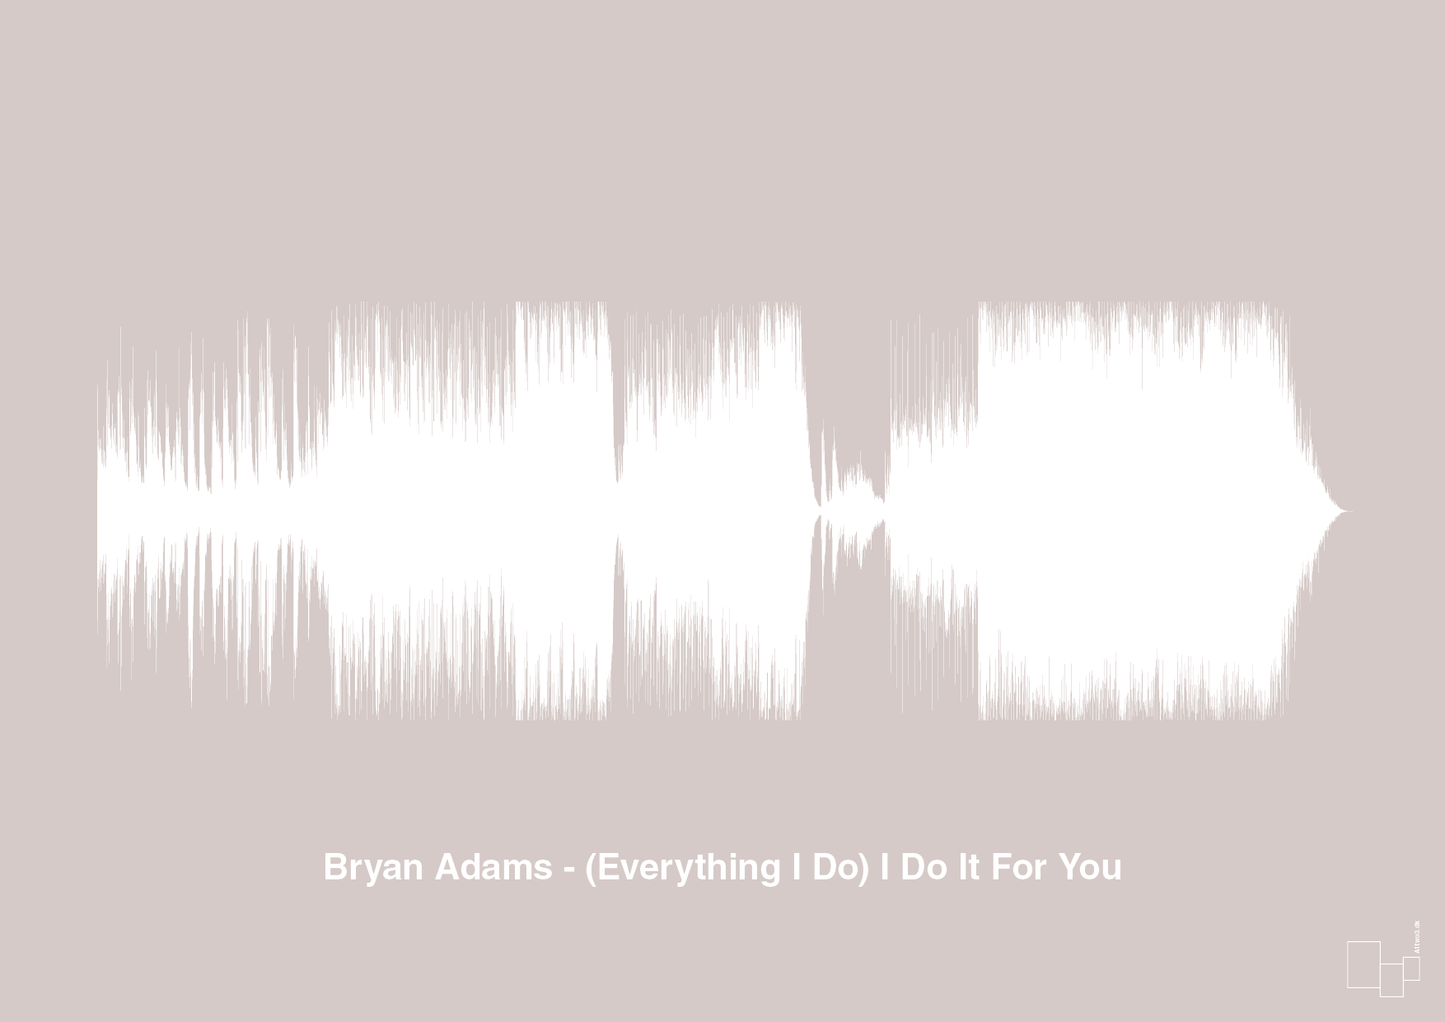 bryan adams - (everything i do) i do it for you - Plakat med Musik i Broken Beige